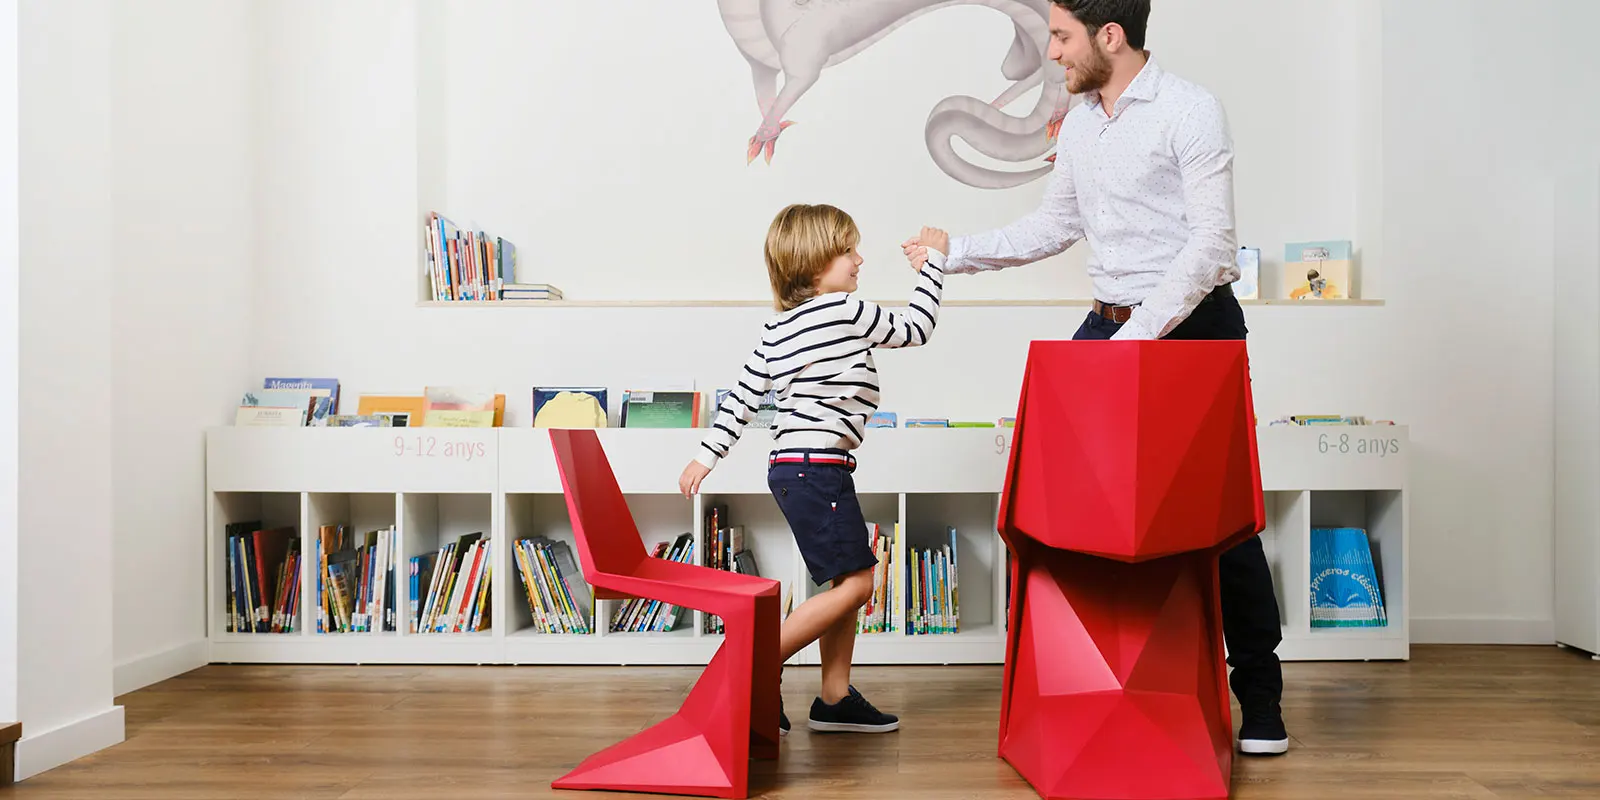 chaises-mobilier-enfants-contract-design-voxel-karim-rashid-vondom (5) copie